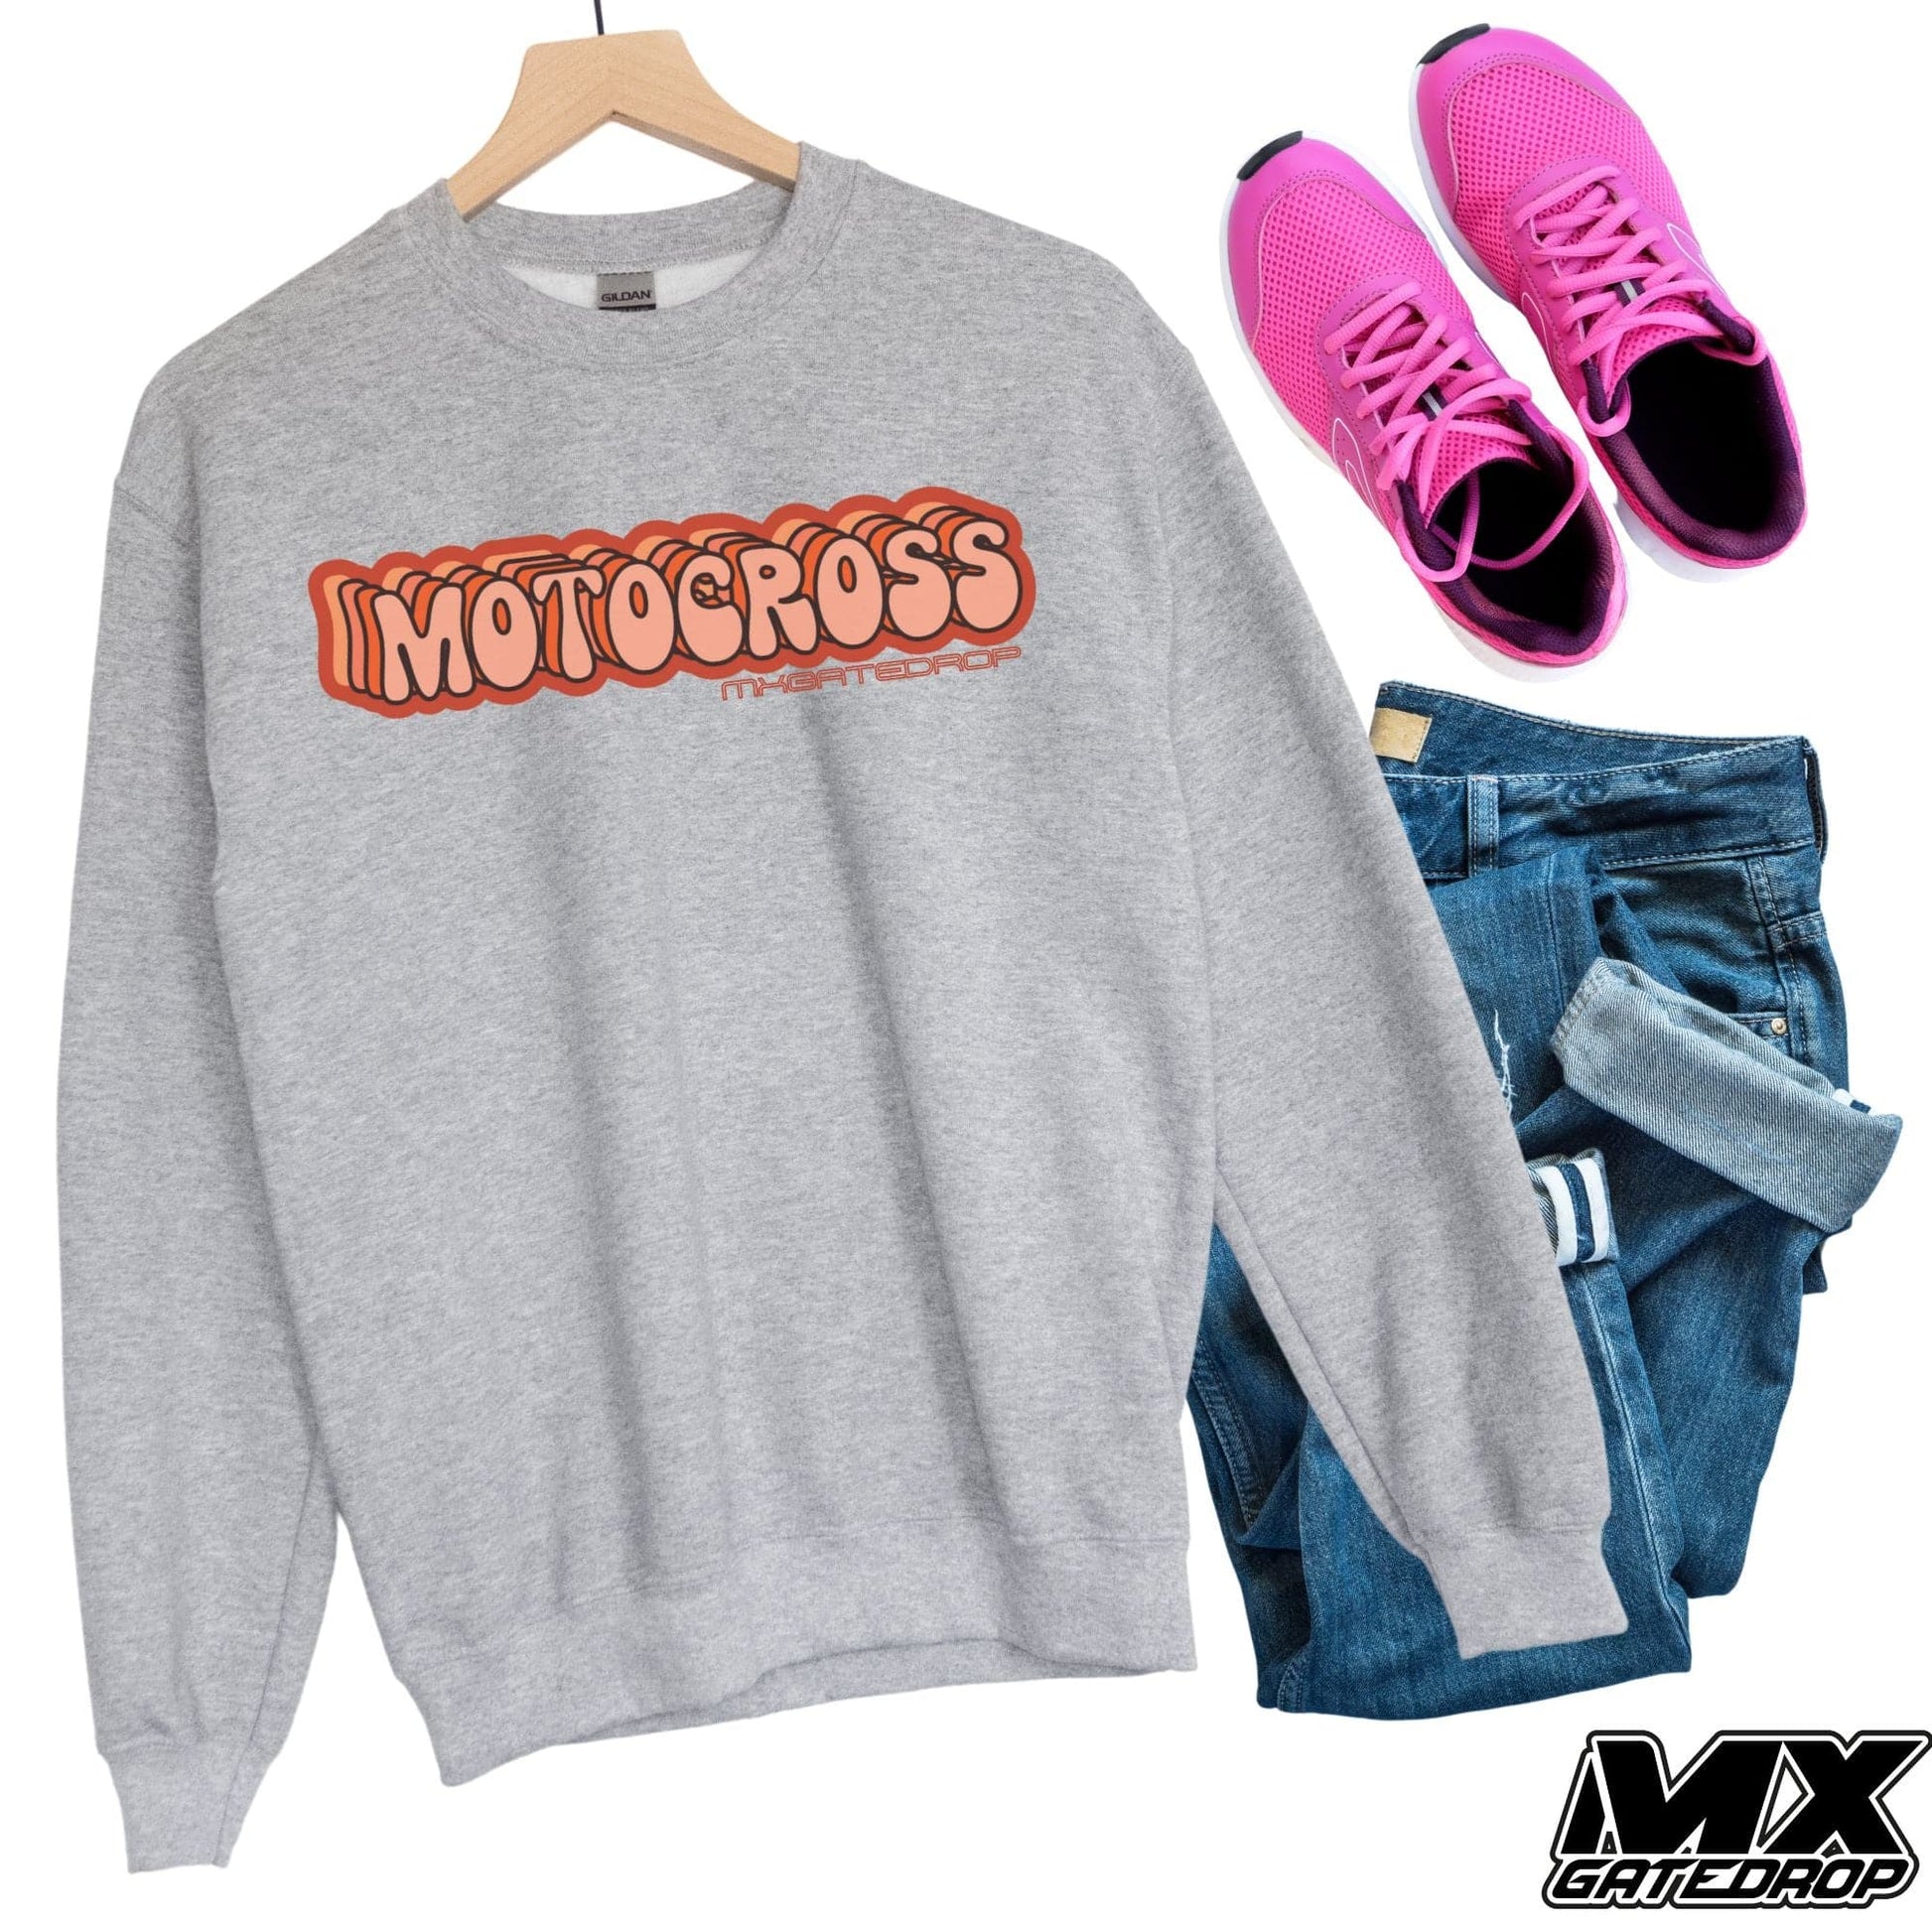 Motocross Raceday Statement Sweatshirt